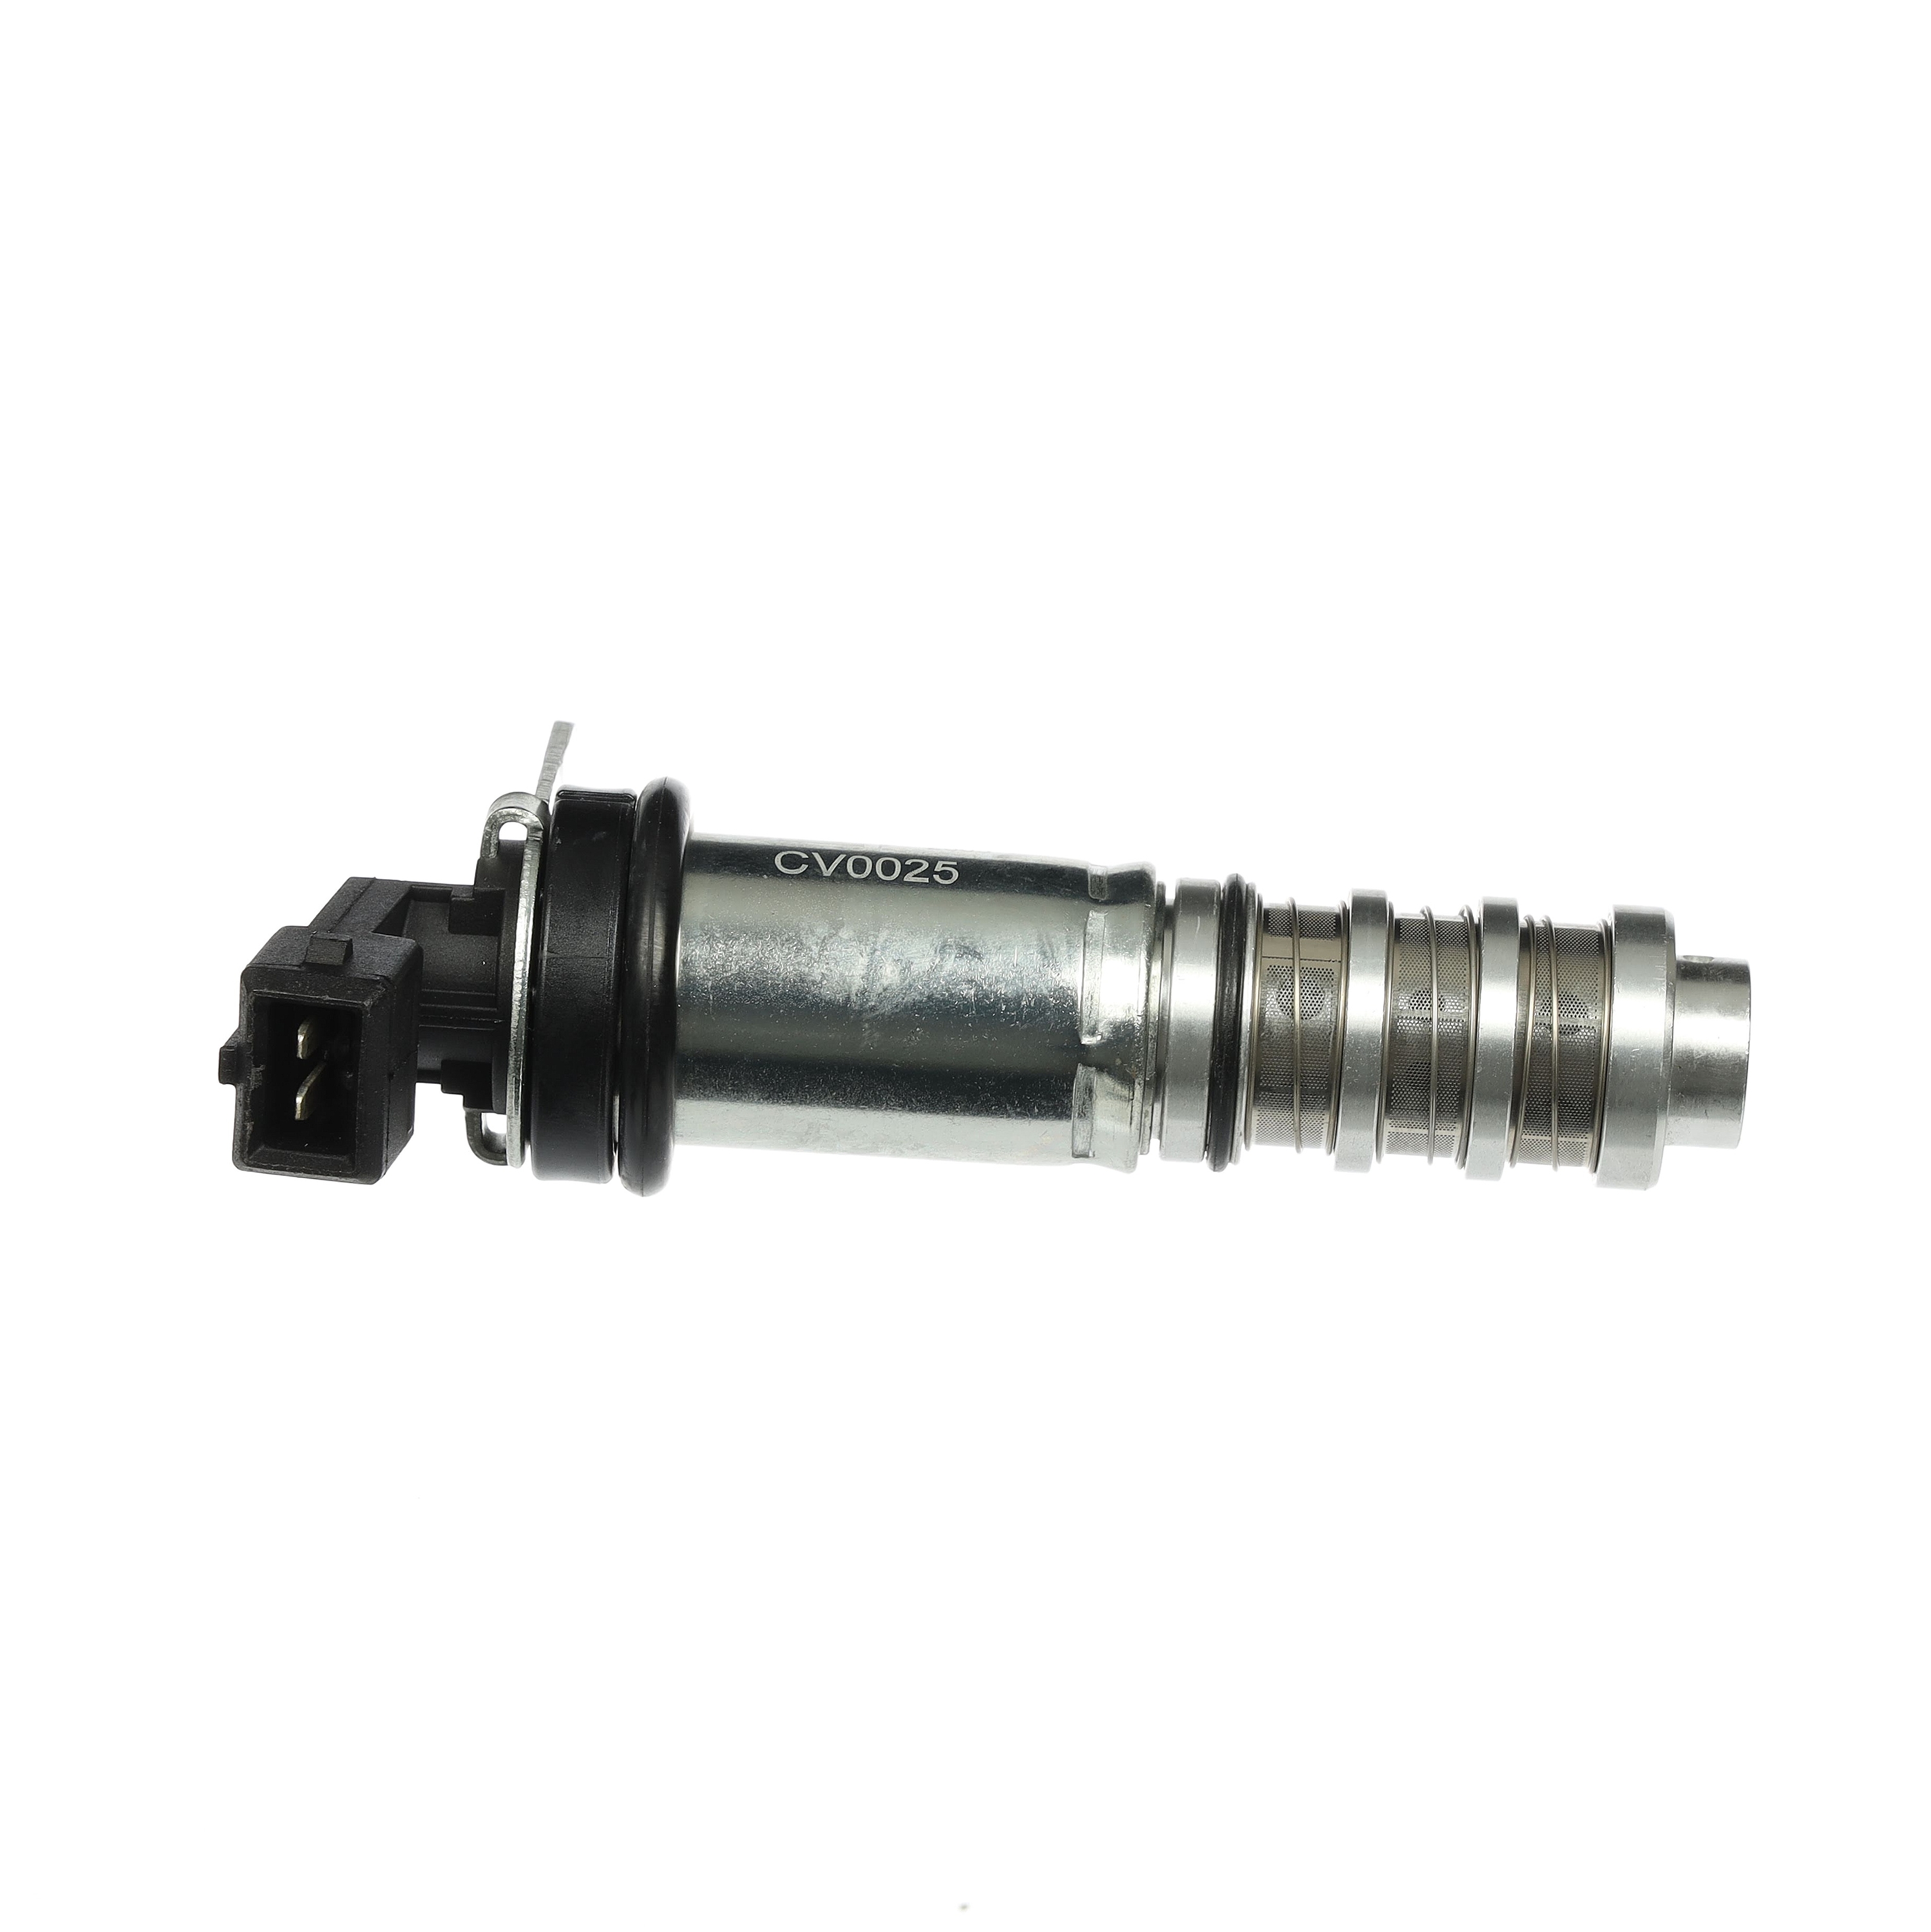 Audi A6 Camshaft adjustment valve 14089795 ET ENGINETEAM CV0025 online buy